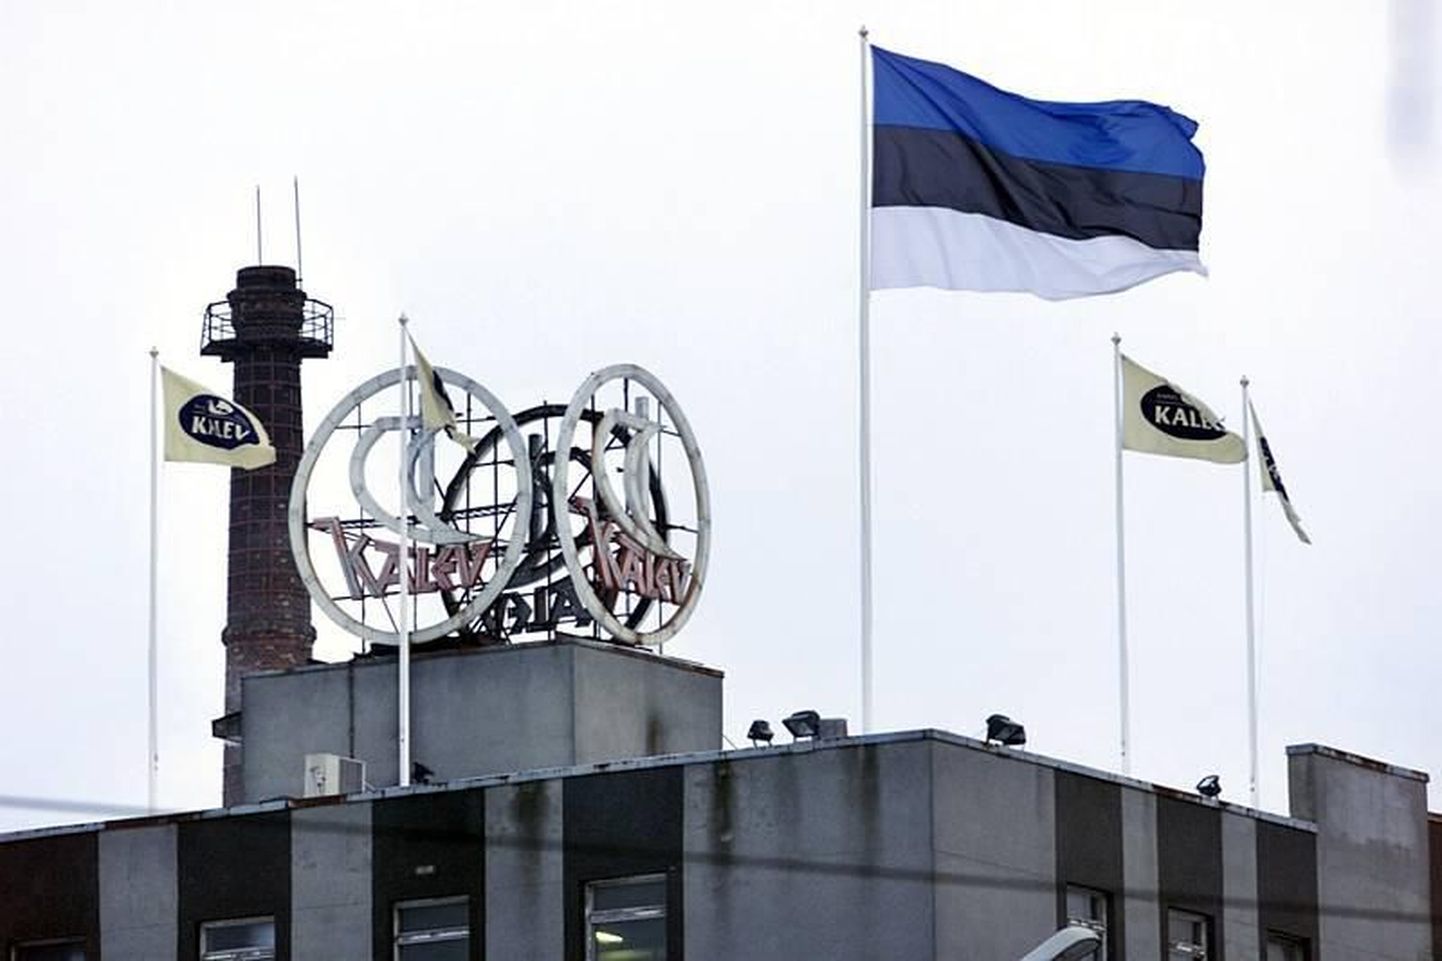 Eestis valmistatud tooted saavad hinnasiltidele lipuvärvides kleebised. Pildil Eesti lipp kommivabriku Kalev endisel hoonel.